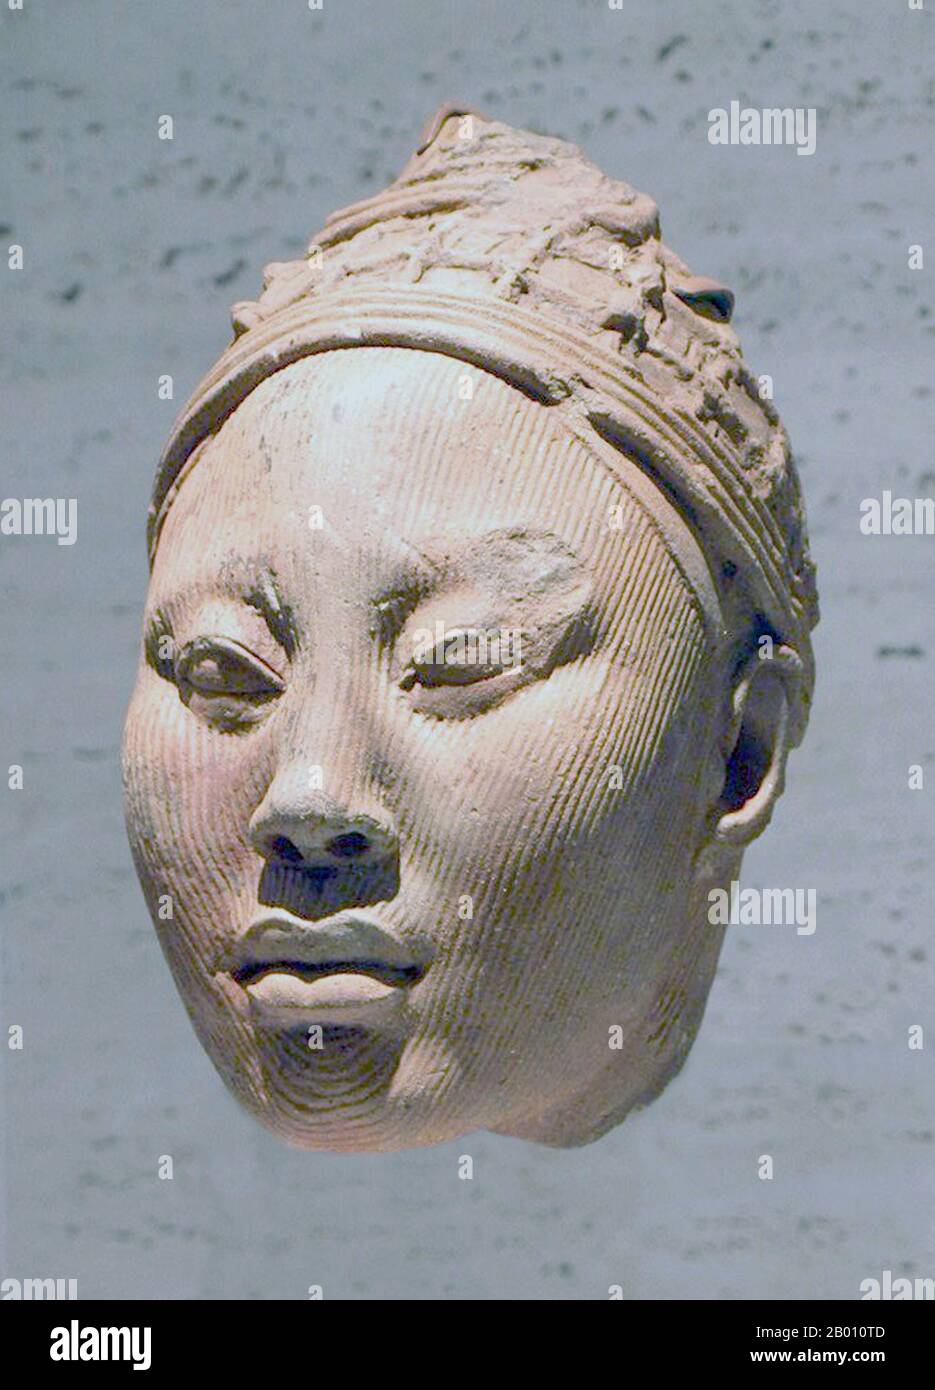 Nigeria: Terrakotta-Kopf einer gekrönten Yoruba-Königin aus dem Königreich Ife. Zwischen 700 und 900 n.Chr. entwickelte sich das Königreich Ife zu einem bedeutenden künstlerischen Zentrum. Die Stadt war zwischen dem 9th. Und 12th. Jahrhundert eine Siedlung von beträchtlicher Größe, mit Häusern mit kerzenbepflasterten Gehwegen. IFE ist weltweit bekannt für seine antiken und naturalistischen Bronze-, Stein- und Terrakotta-Skulpturen, die zwischen 1200 und 1400 n. Chr. ihren Höhepunkt in der künstlerischen Ausdrucksweise erreichten.nach dieser Zeit ging die Produktion zurück, da sich die politische und wirtschaftliche Macht in das nahe gelegene Königreich Benin verlagert hatte, das wie das Yoruba-Königreich Oyo Stockfoto